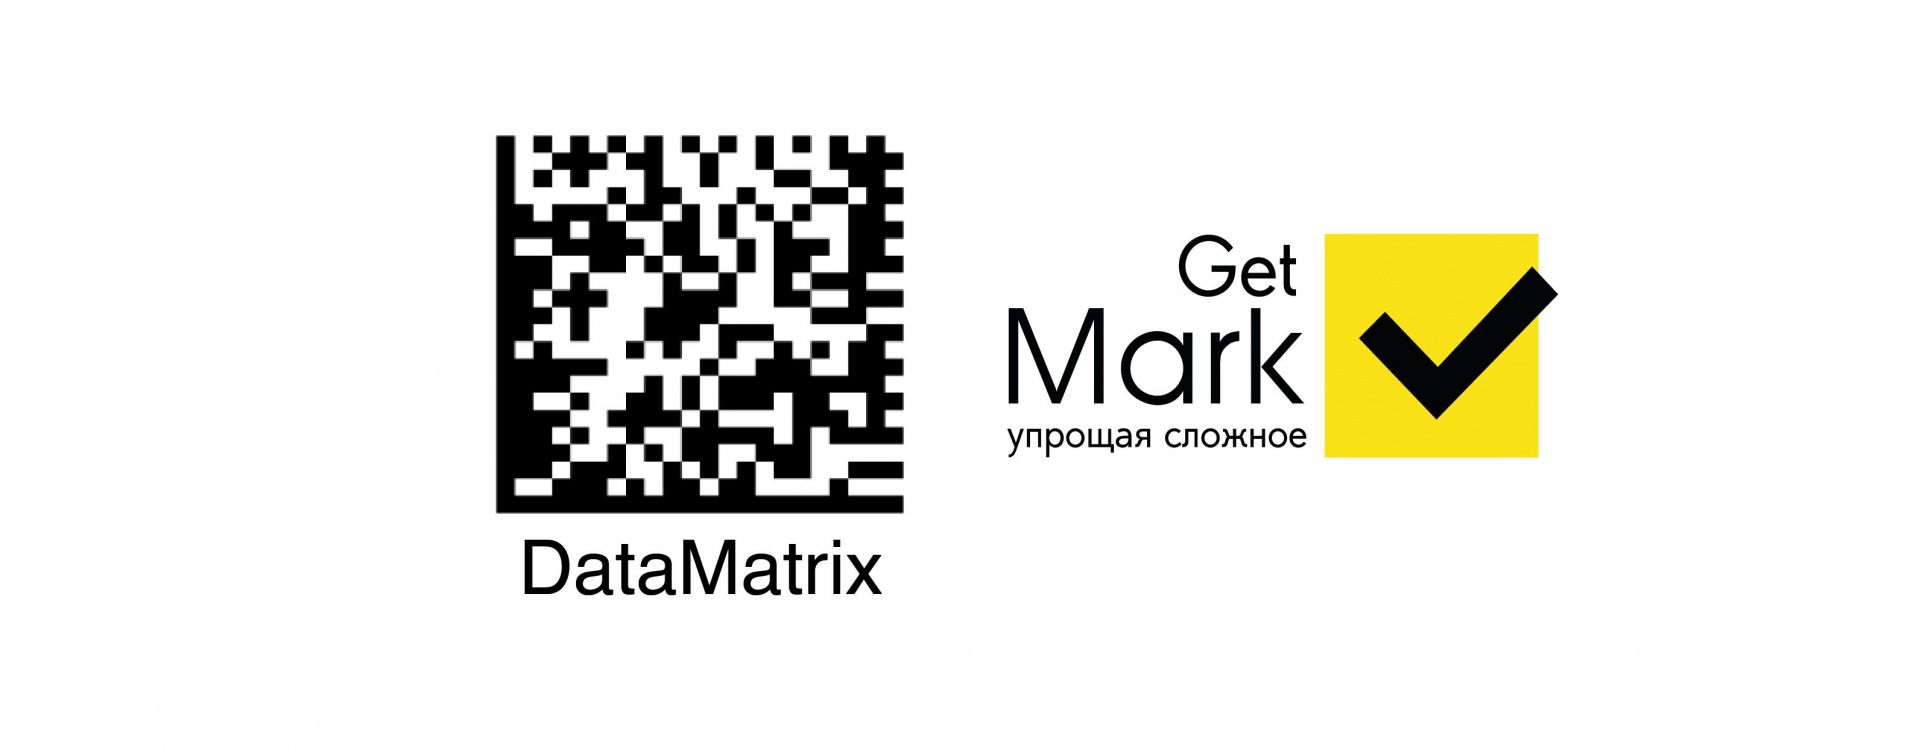 Инструкция по созданию этикетки DataMatrix по своему шаблону